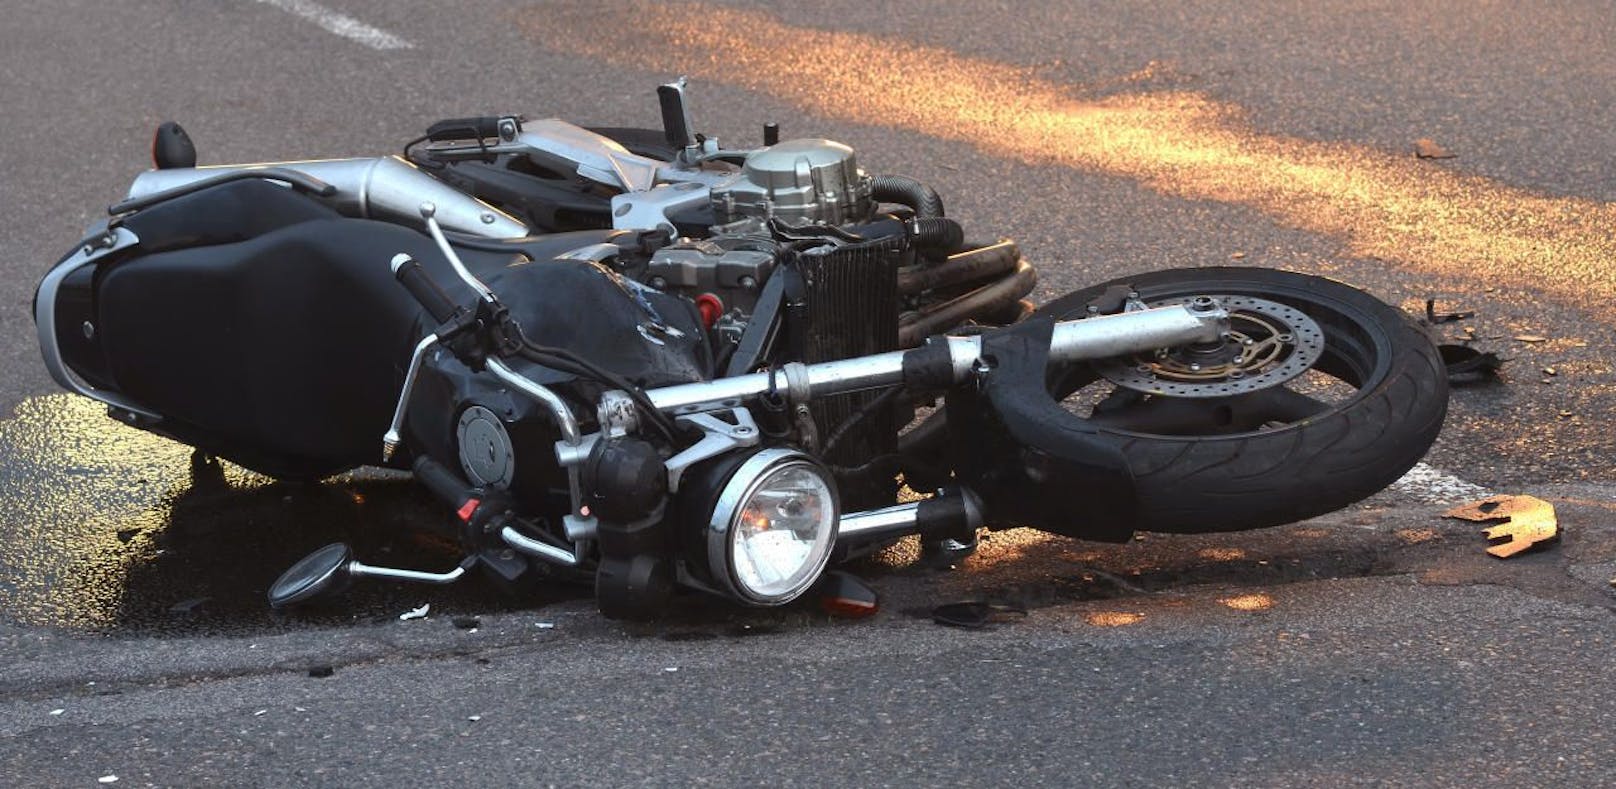 Beim Unfall verletzte sich der Motorradfahrer.